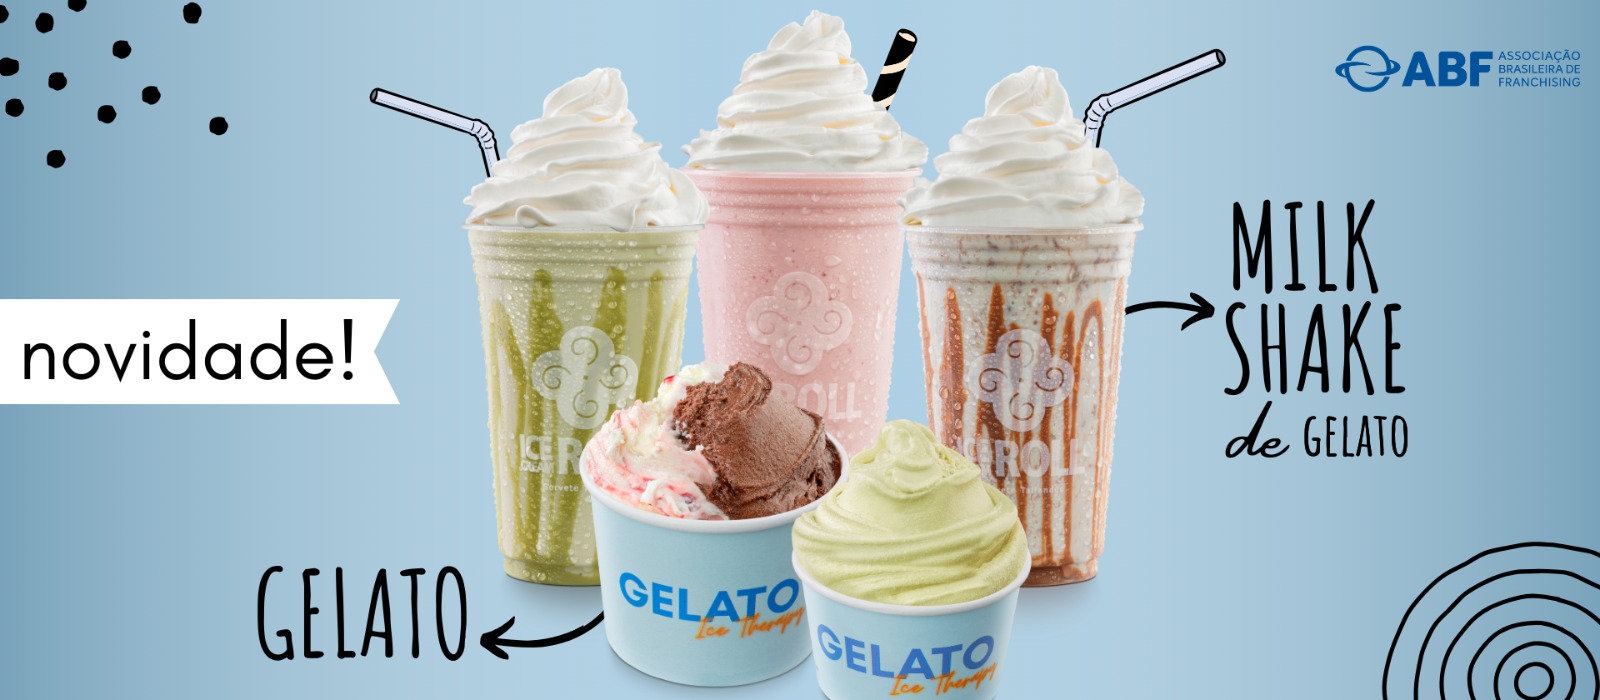 Ice Cream Roll | A maior franquia de sorvete na chapa do mundo!